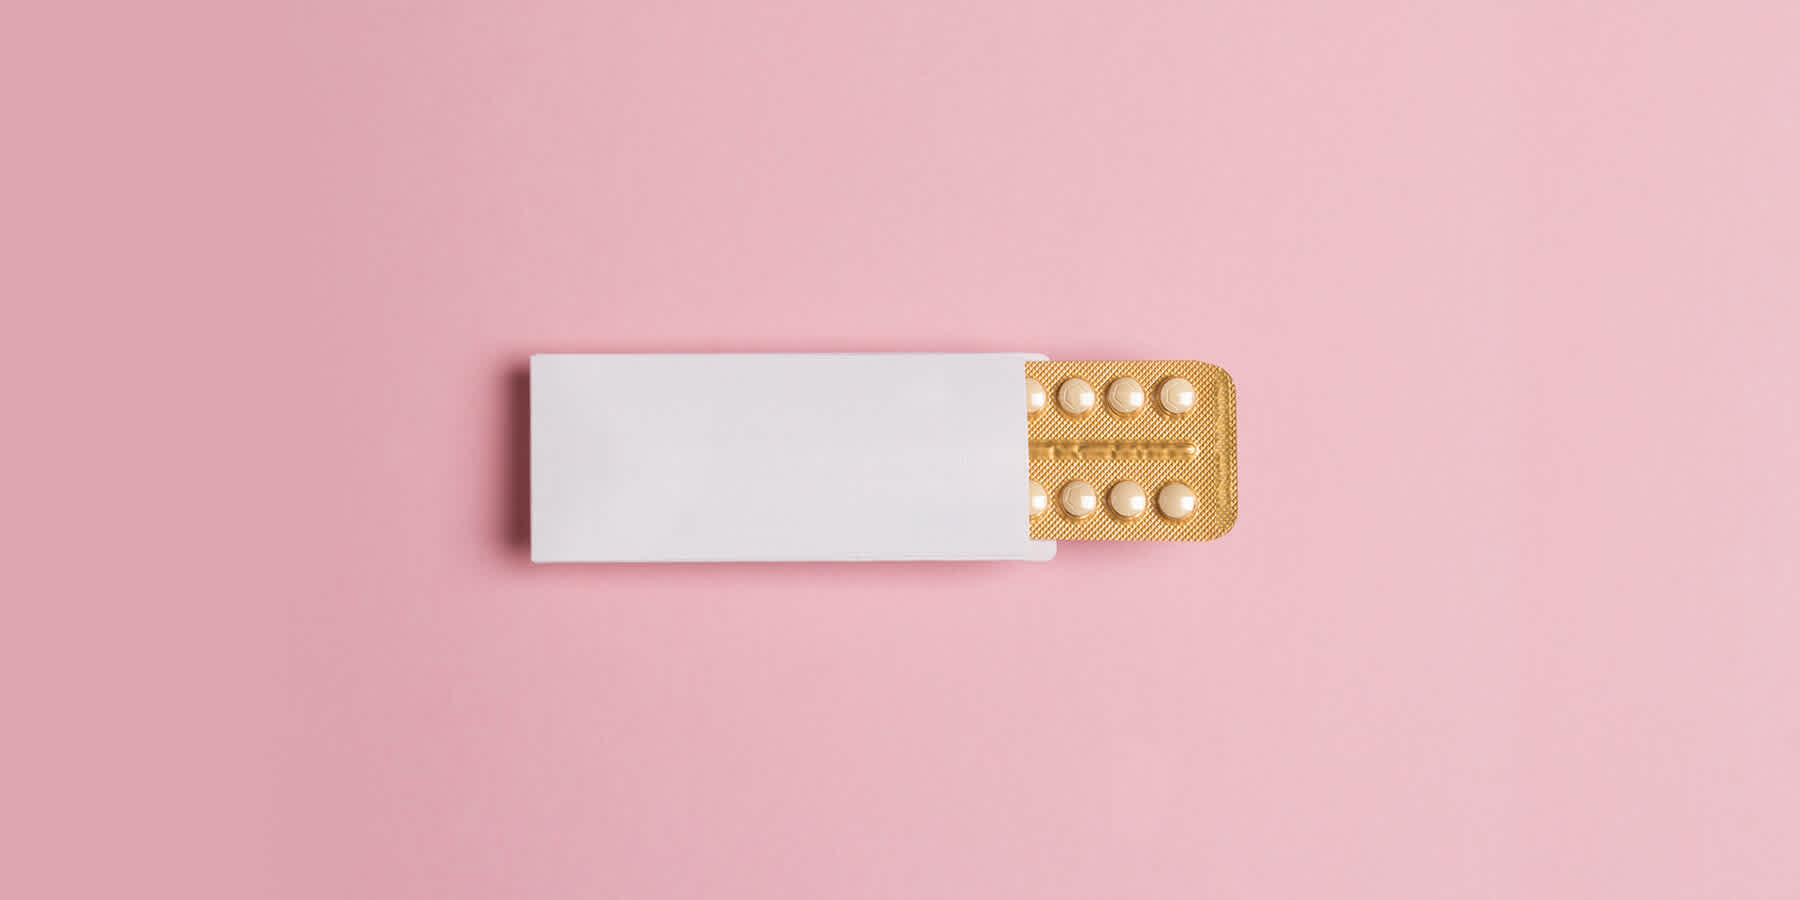 Packet of estrogen medication against pink background